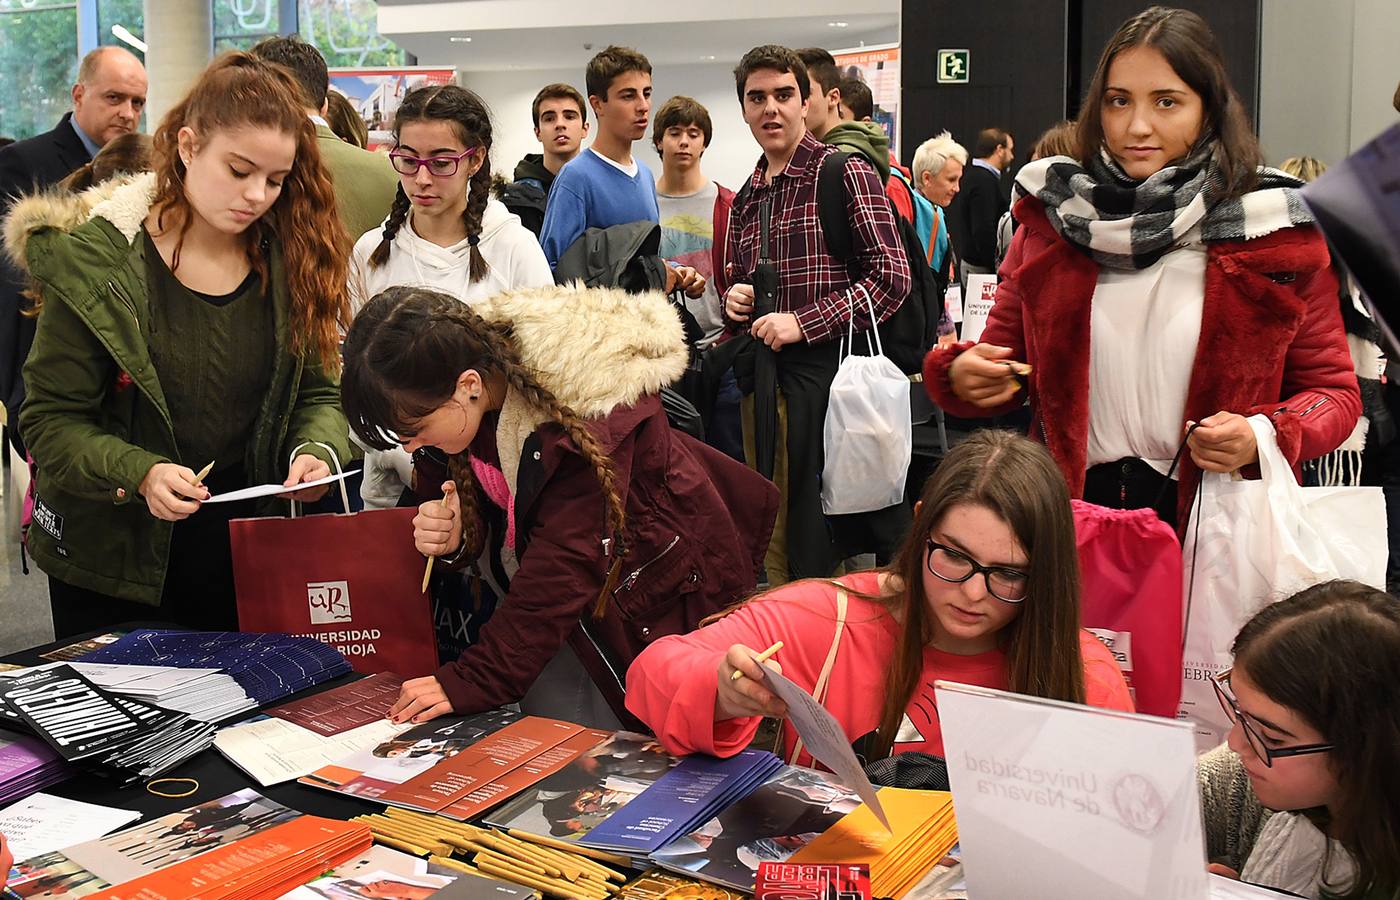 El Palacio acoge la Feria Universitaria Unitour para informar a los jóvenes de las distinas universidades y grados disponibles oara la profesión que deseen